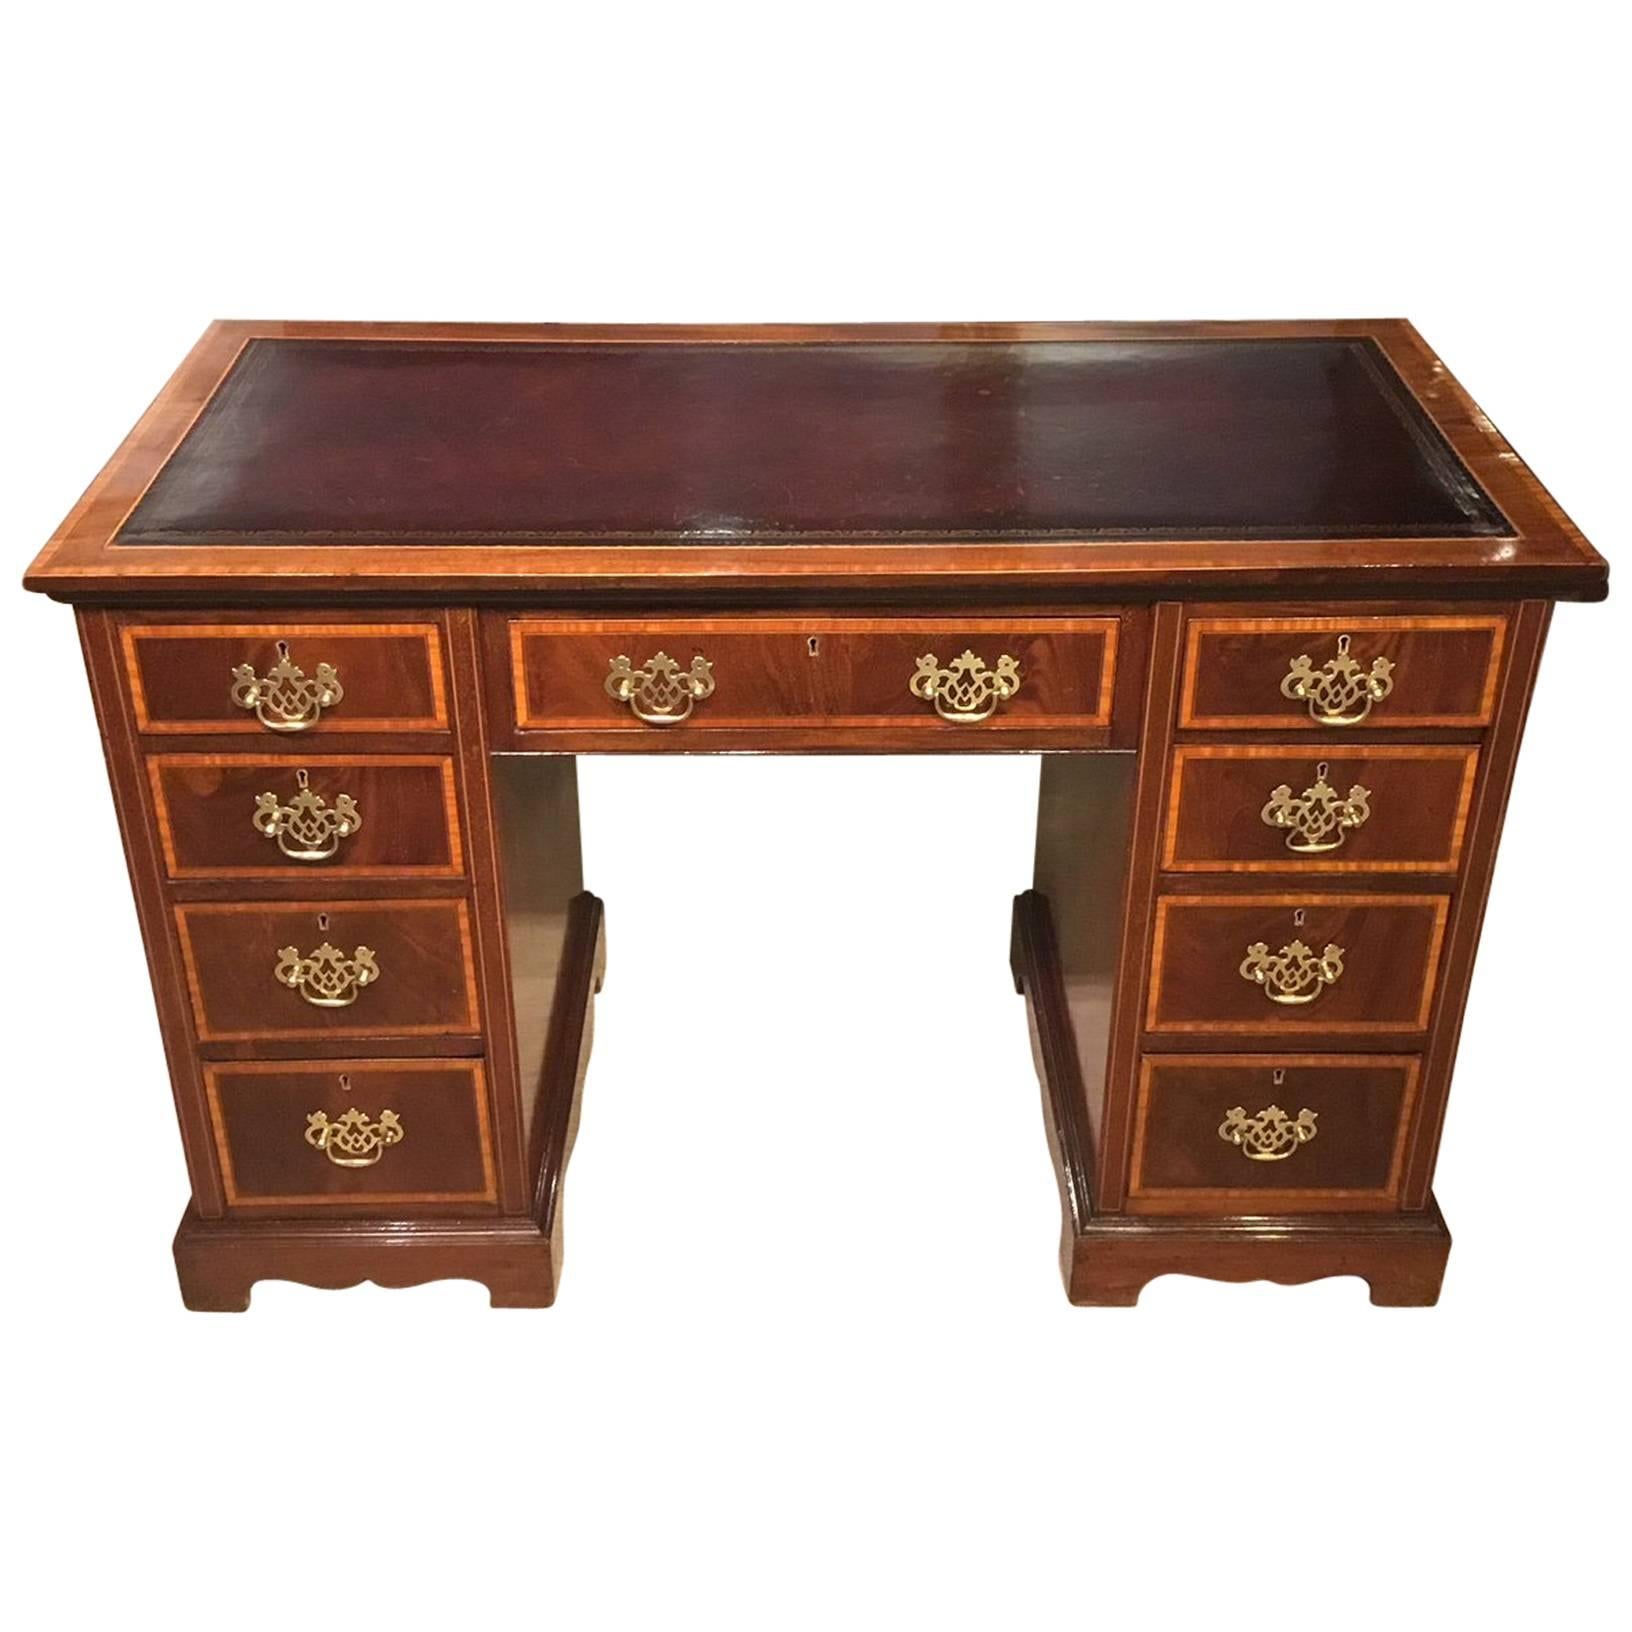 Good Mahogany Inlaid Edwardian Period Pedestal Desk